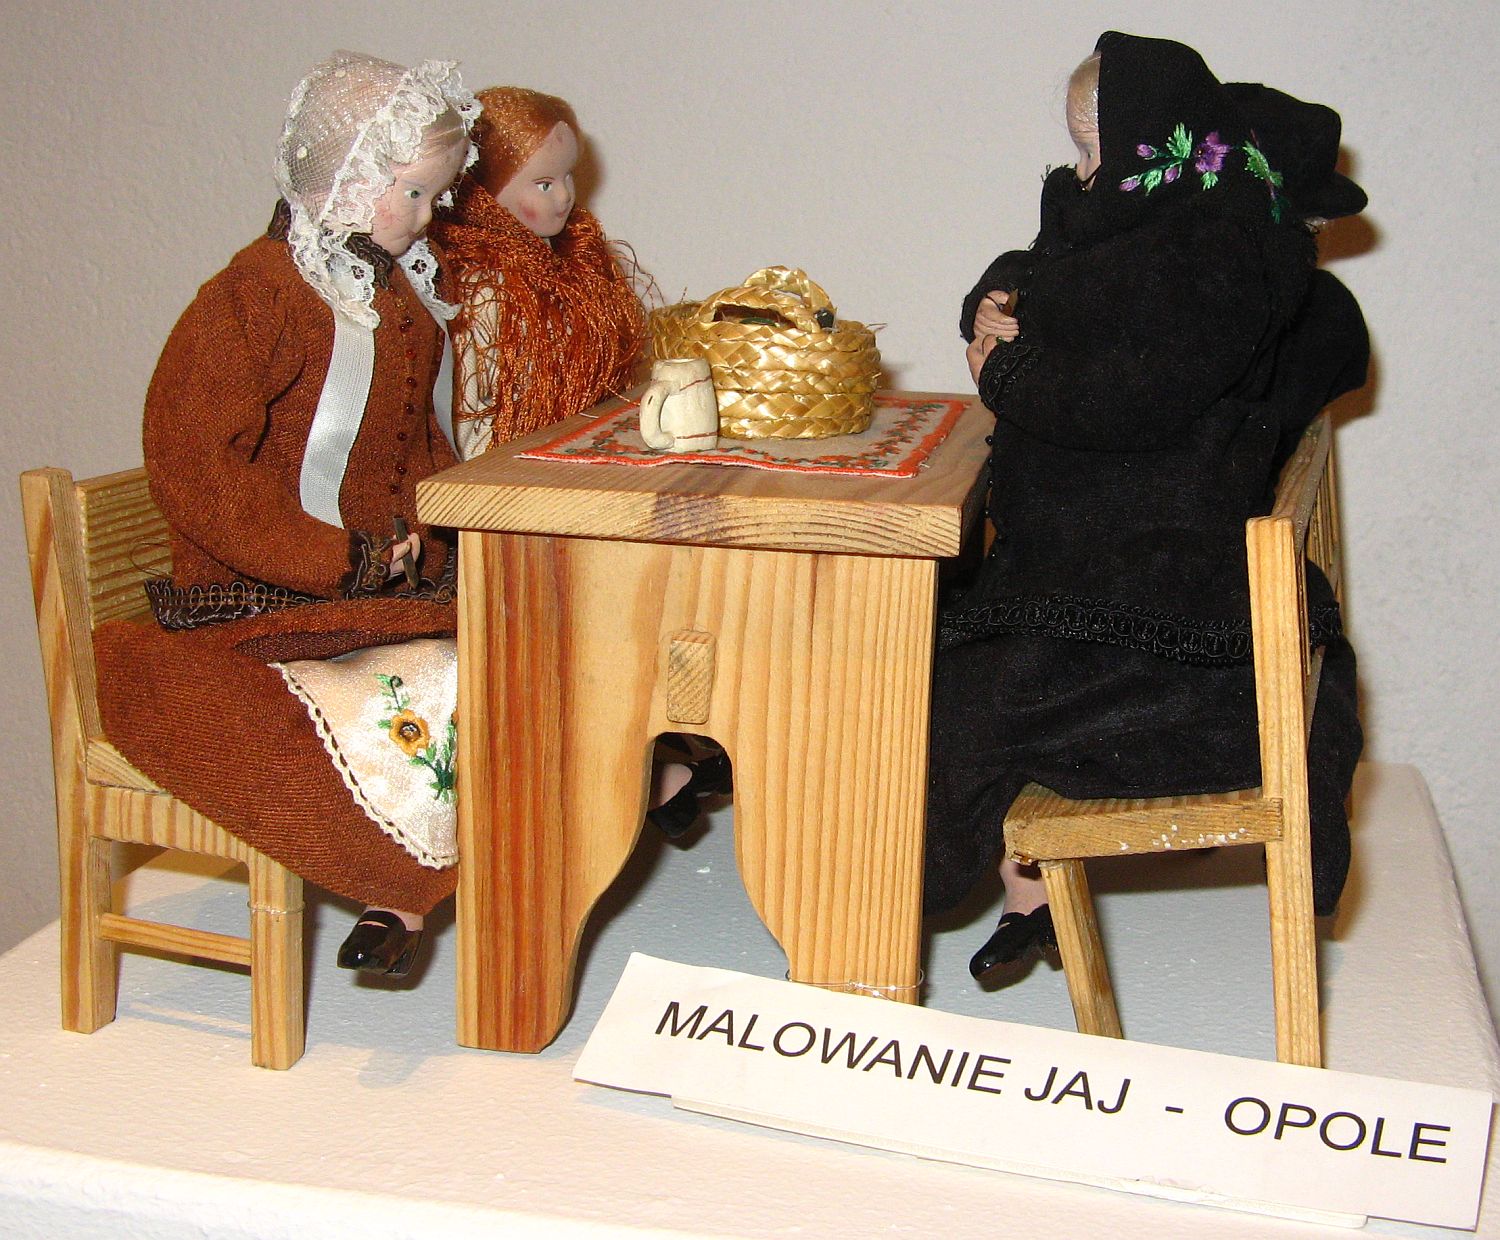 Scena rodzajowa - malowanie jaj. Od 20 stycznia 2011 r. t i inne sceny rodzajowe oglda mona na wystawie w Ratuszu.